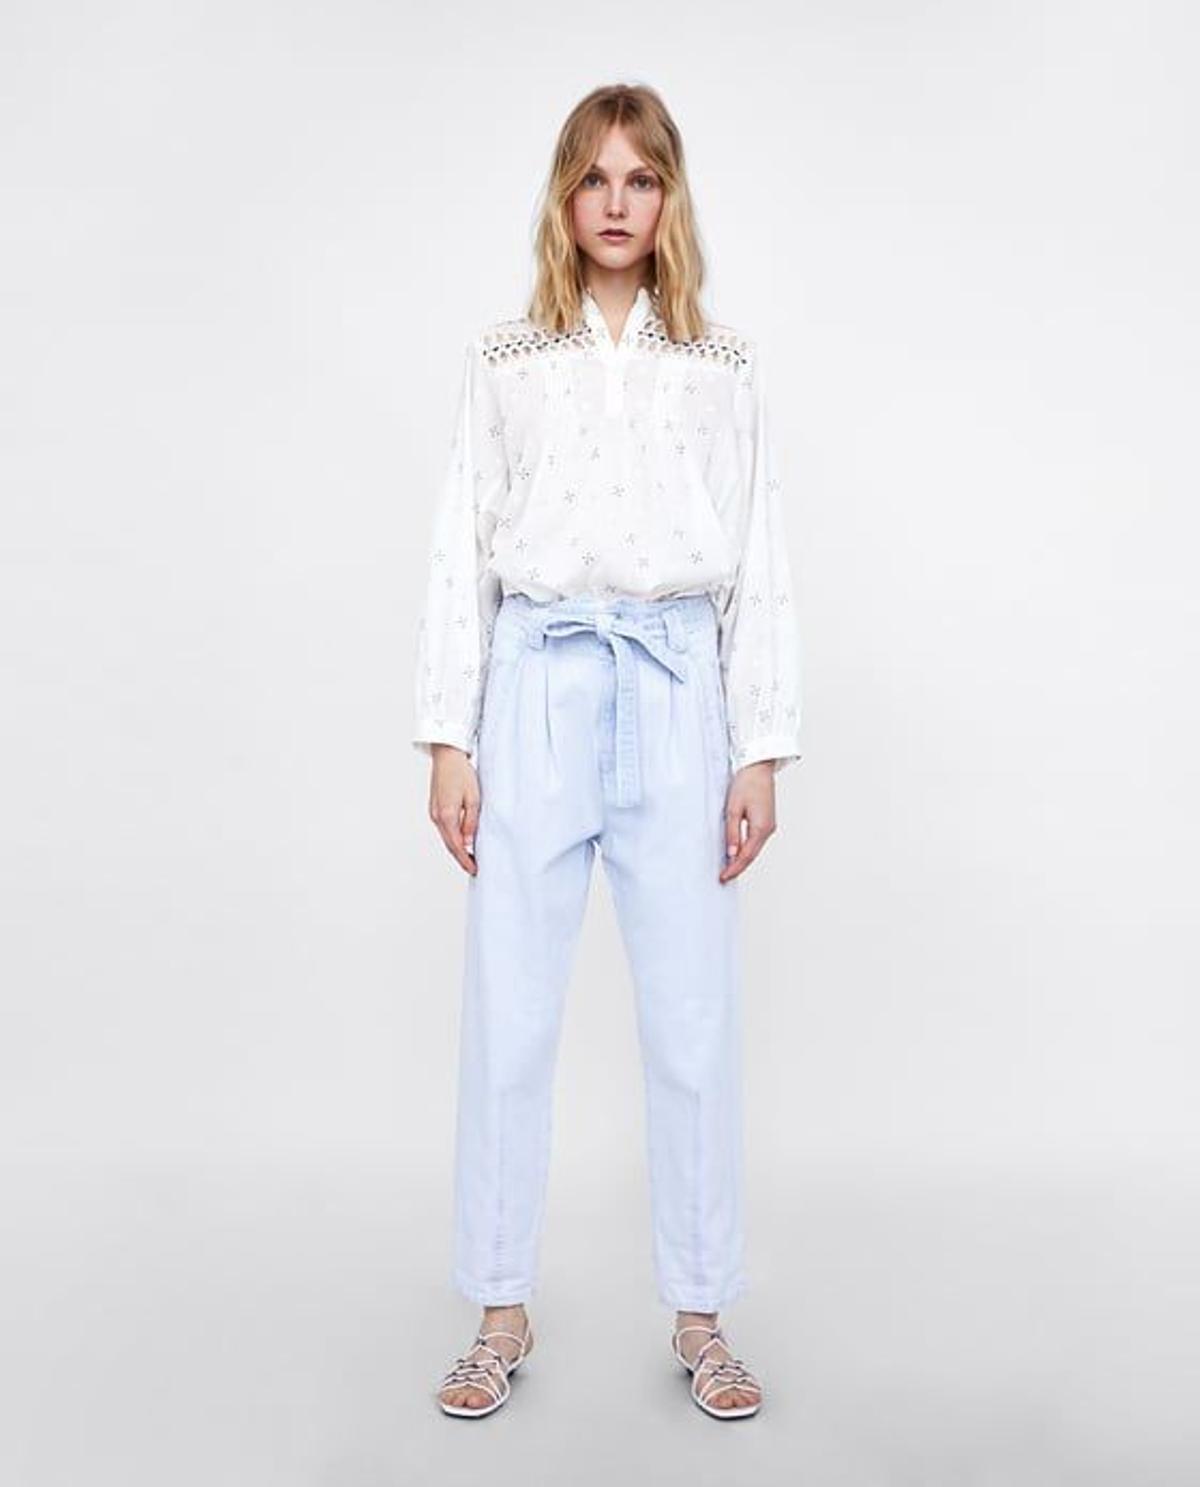 Pantalón de rayas con lazo de Zara (Precio: 22,95 euros)